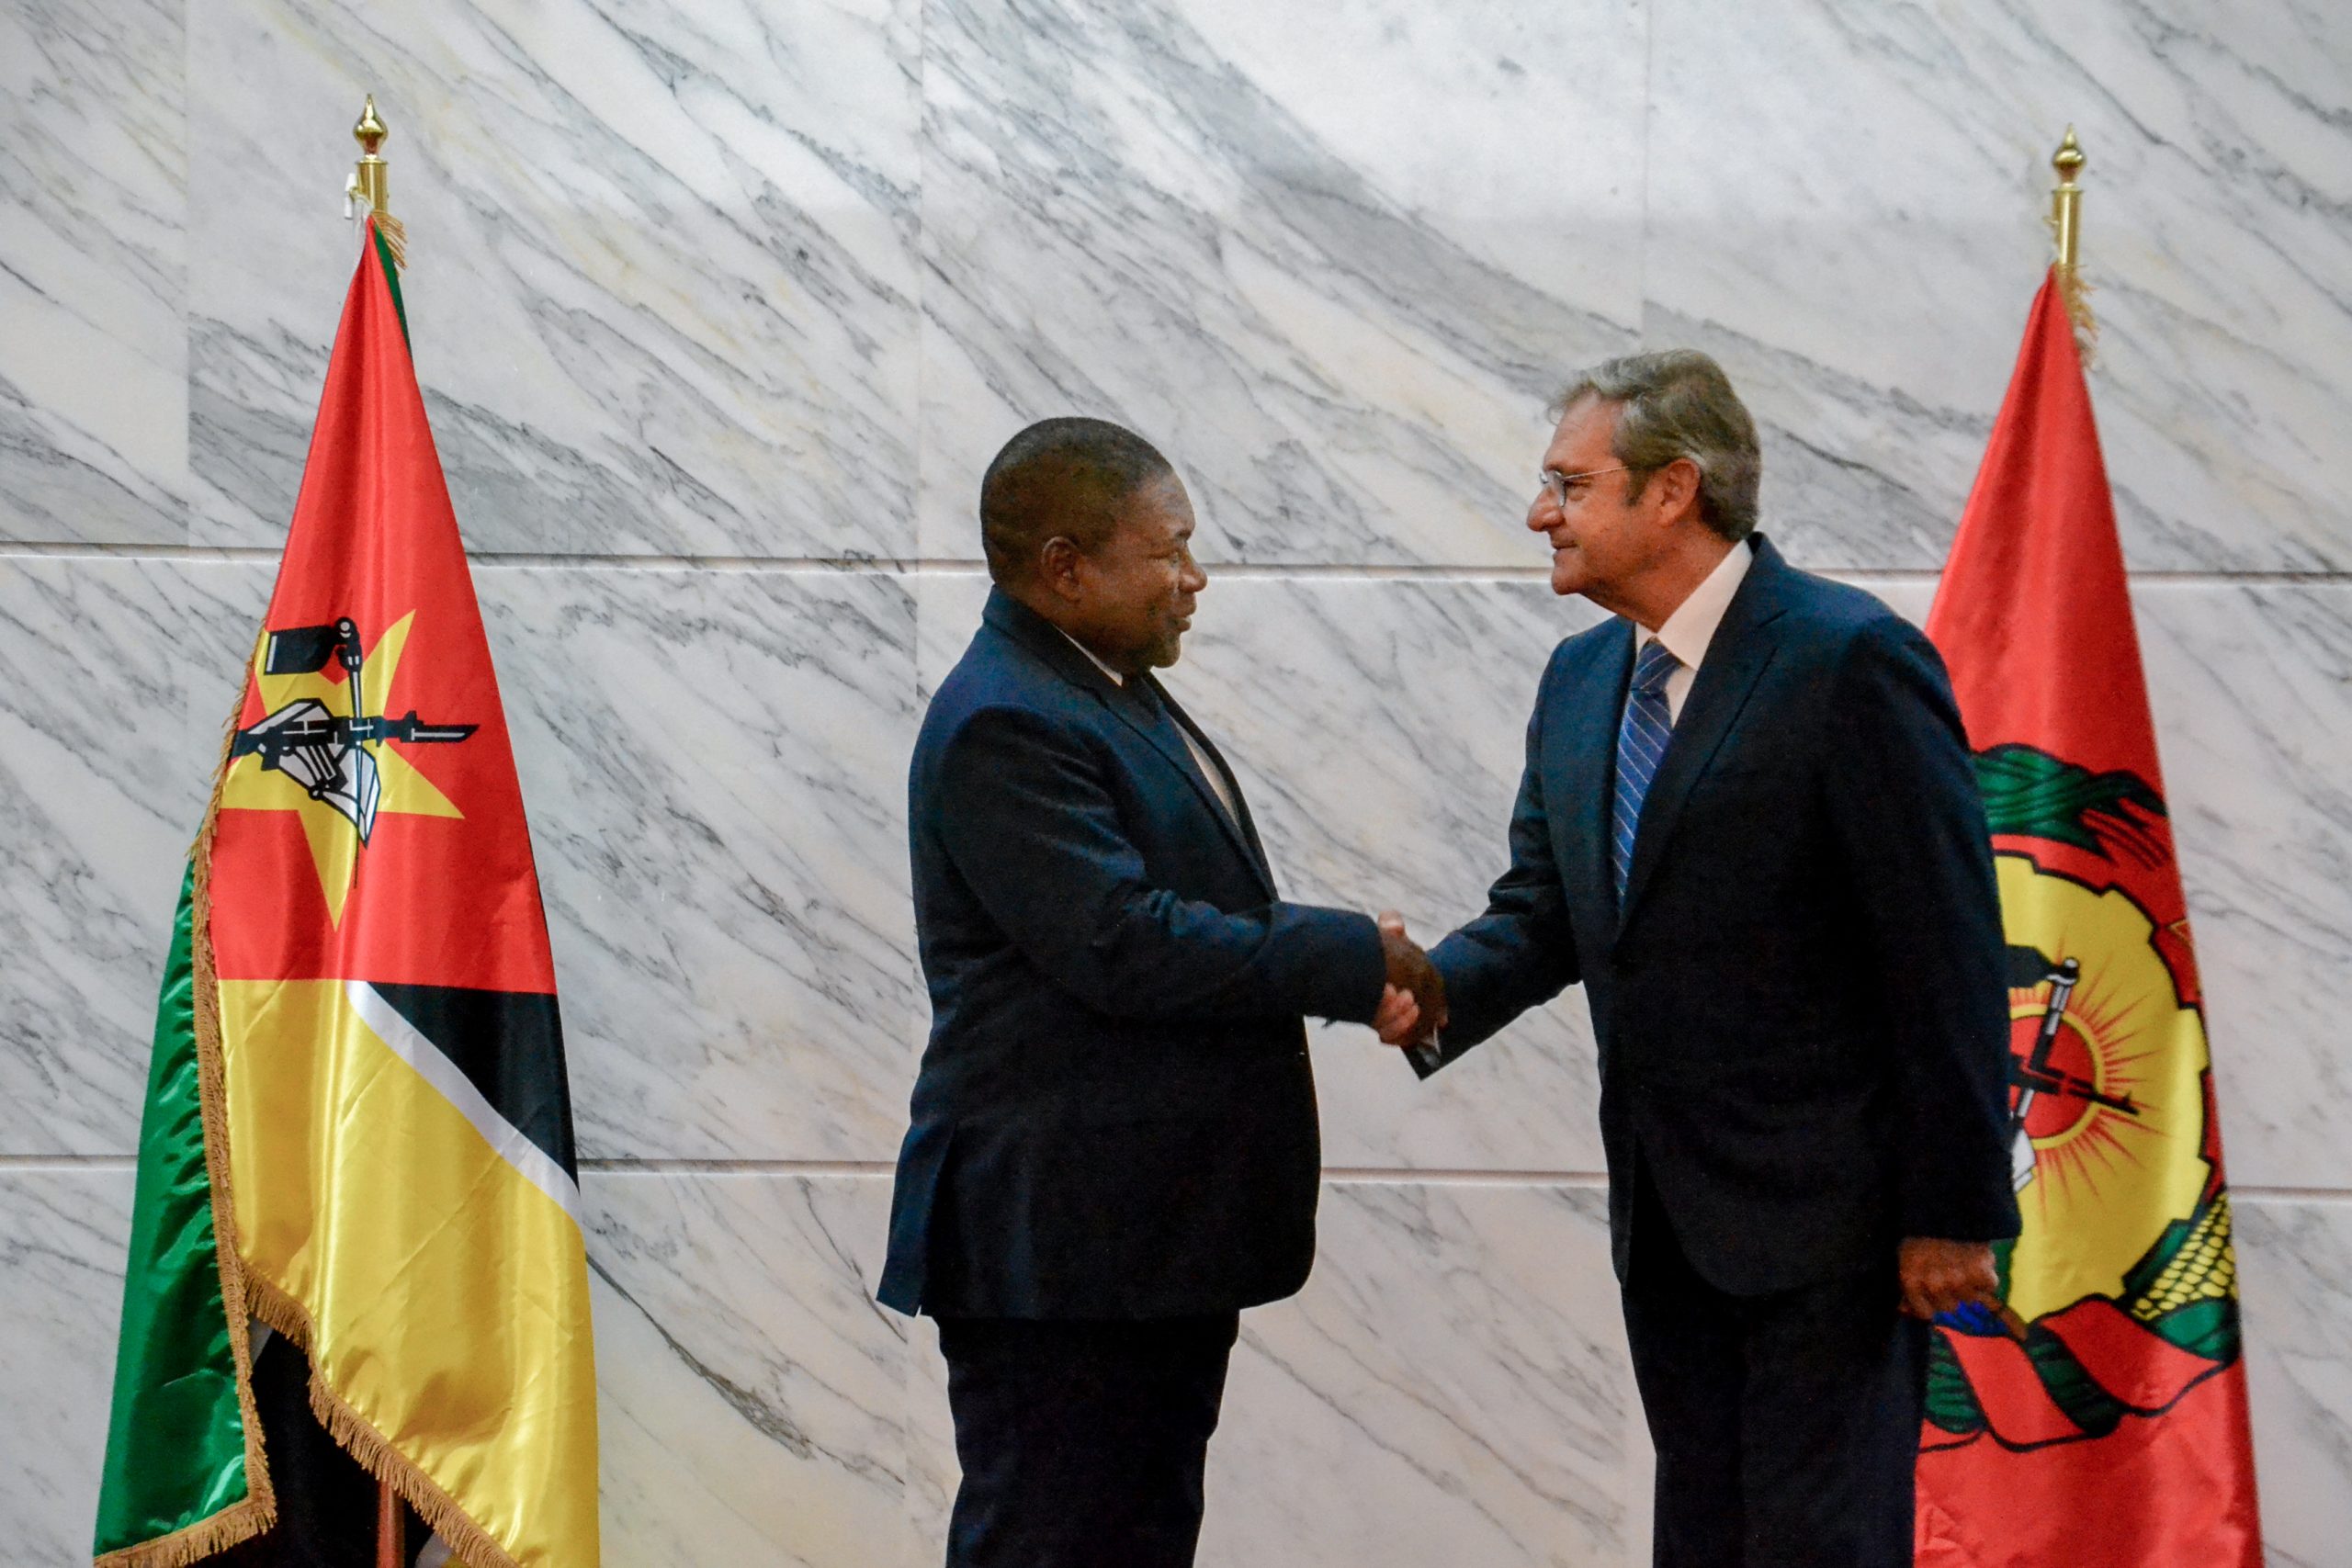 Der Präsident der Republik Mosambik nahm das Beglaubigungsschreiben von neuem Botschafter des Souveränen Malteserordens